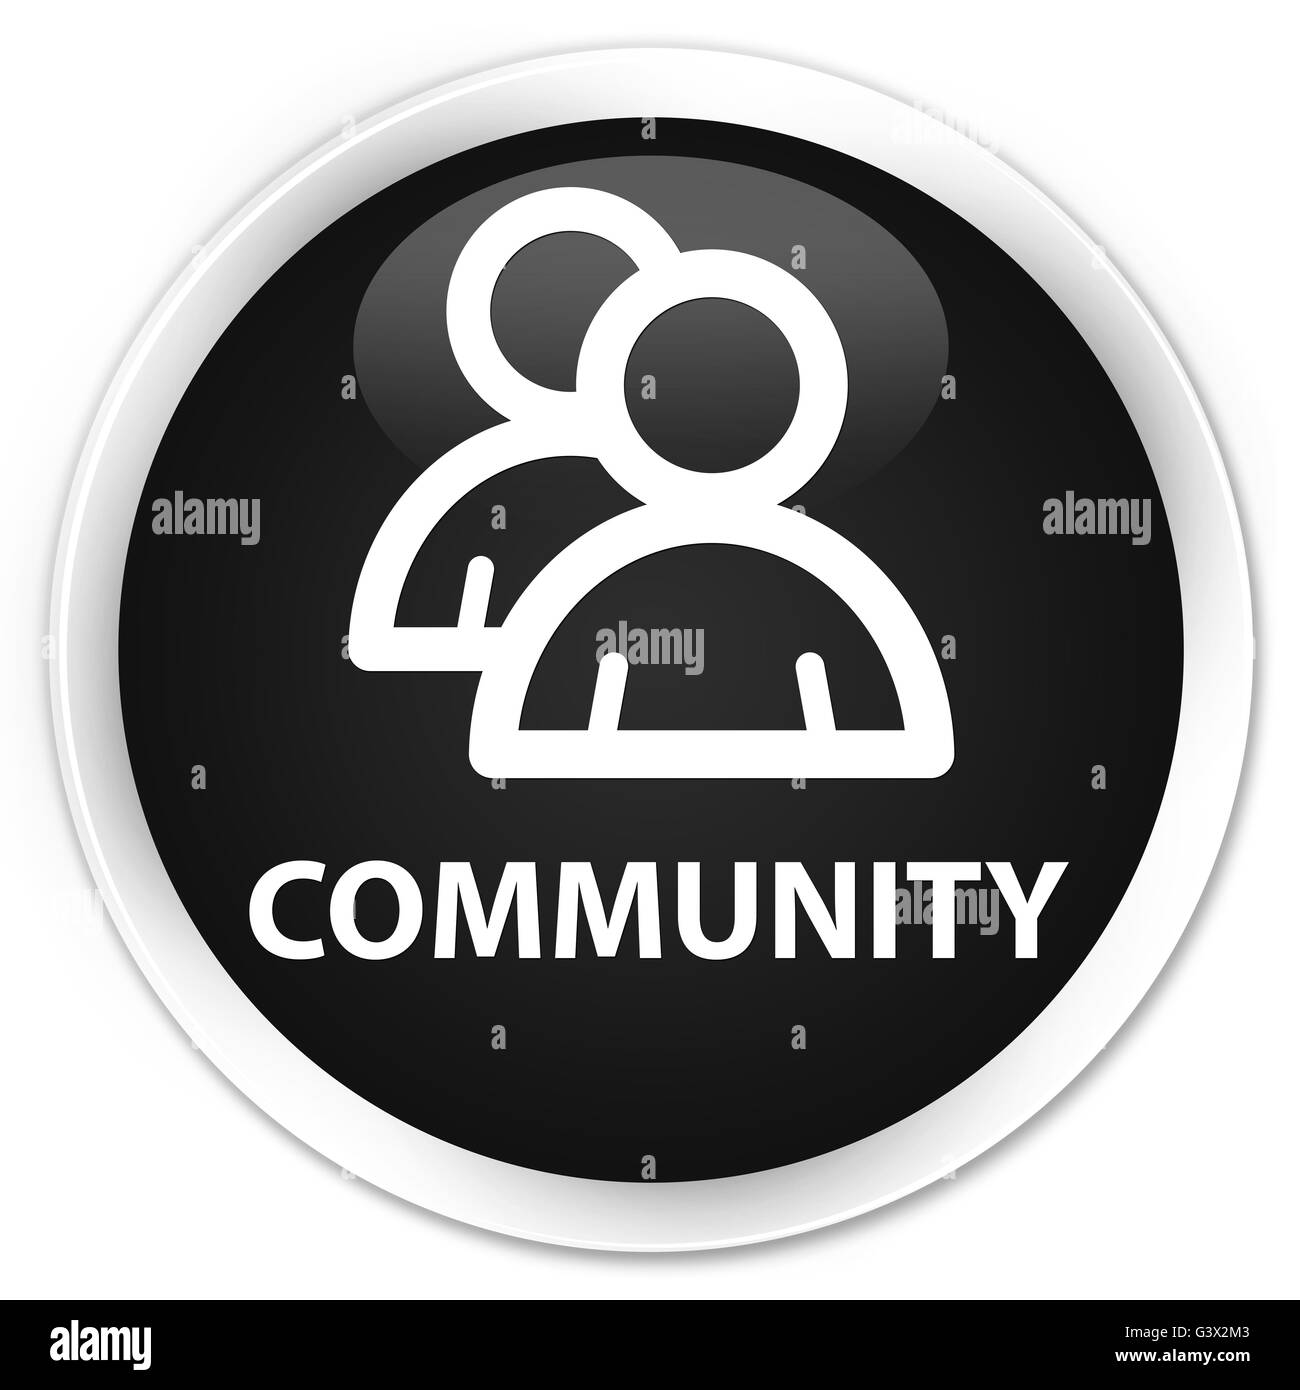 Icône de groupe (communauté) isolé sur le bouton rond noir premium abstract illustration Banque D'Images